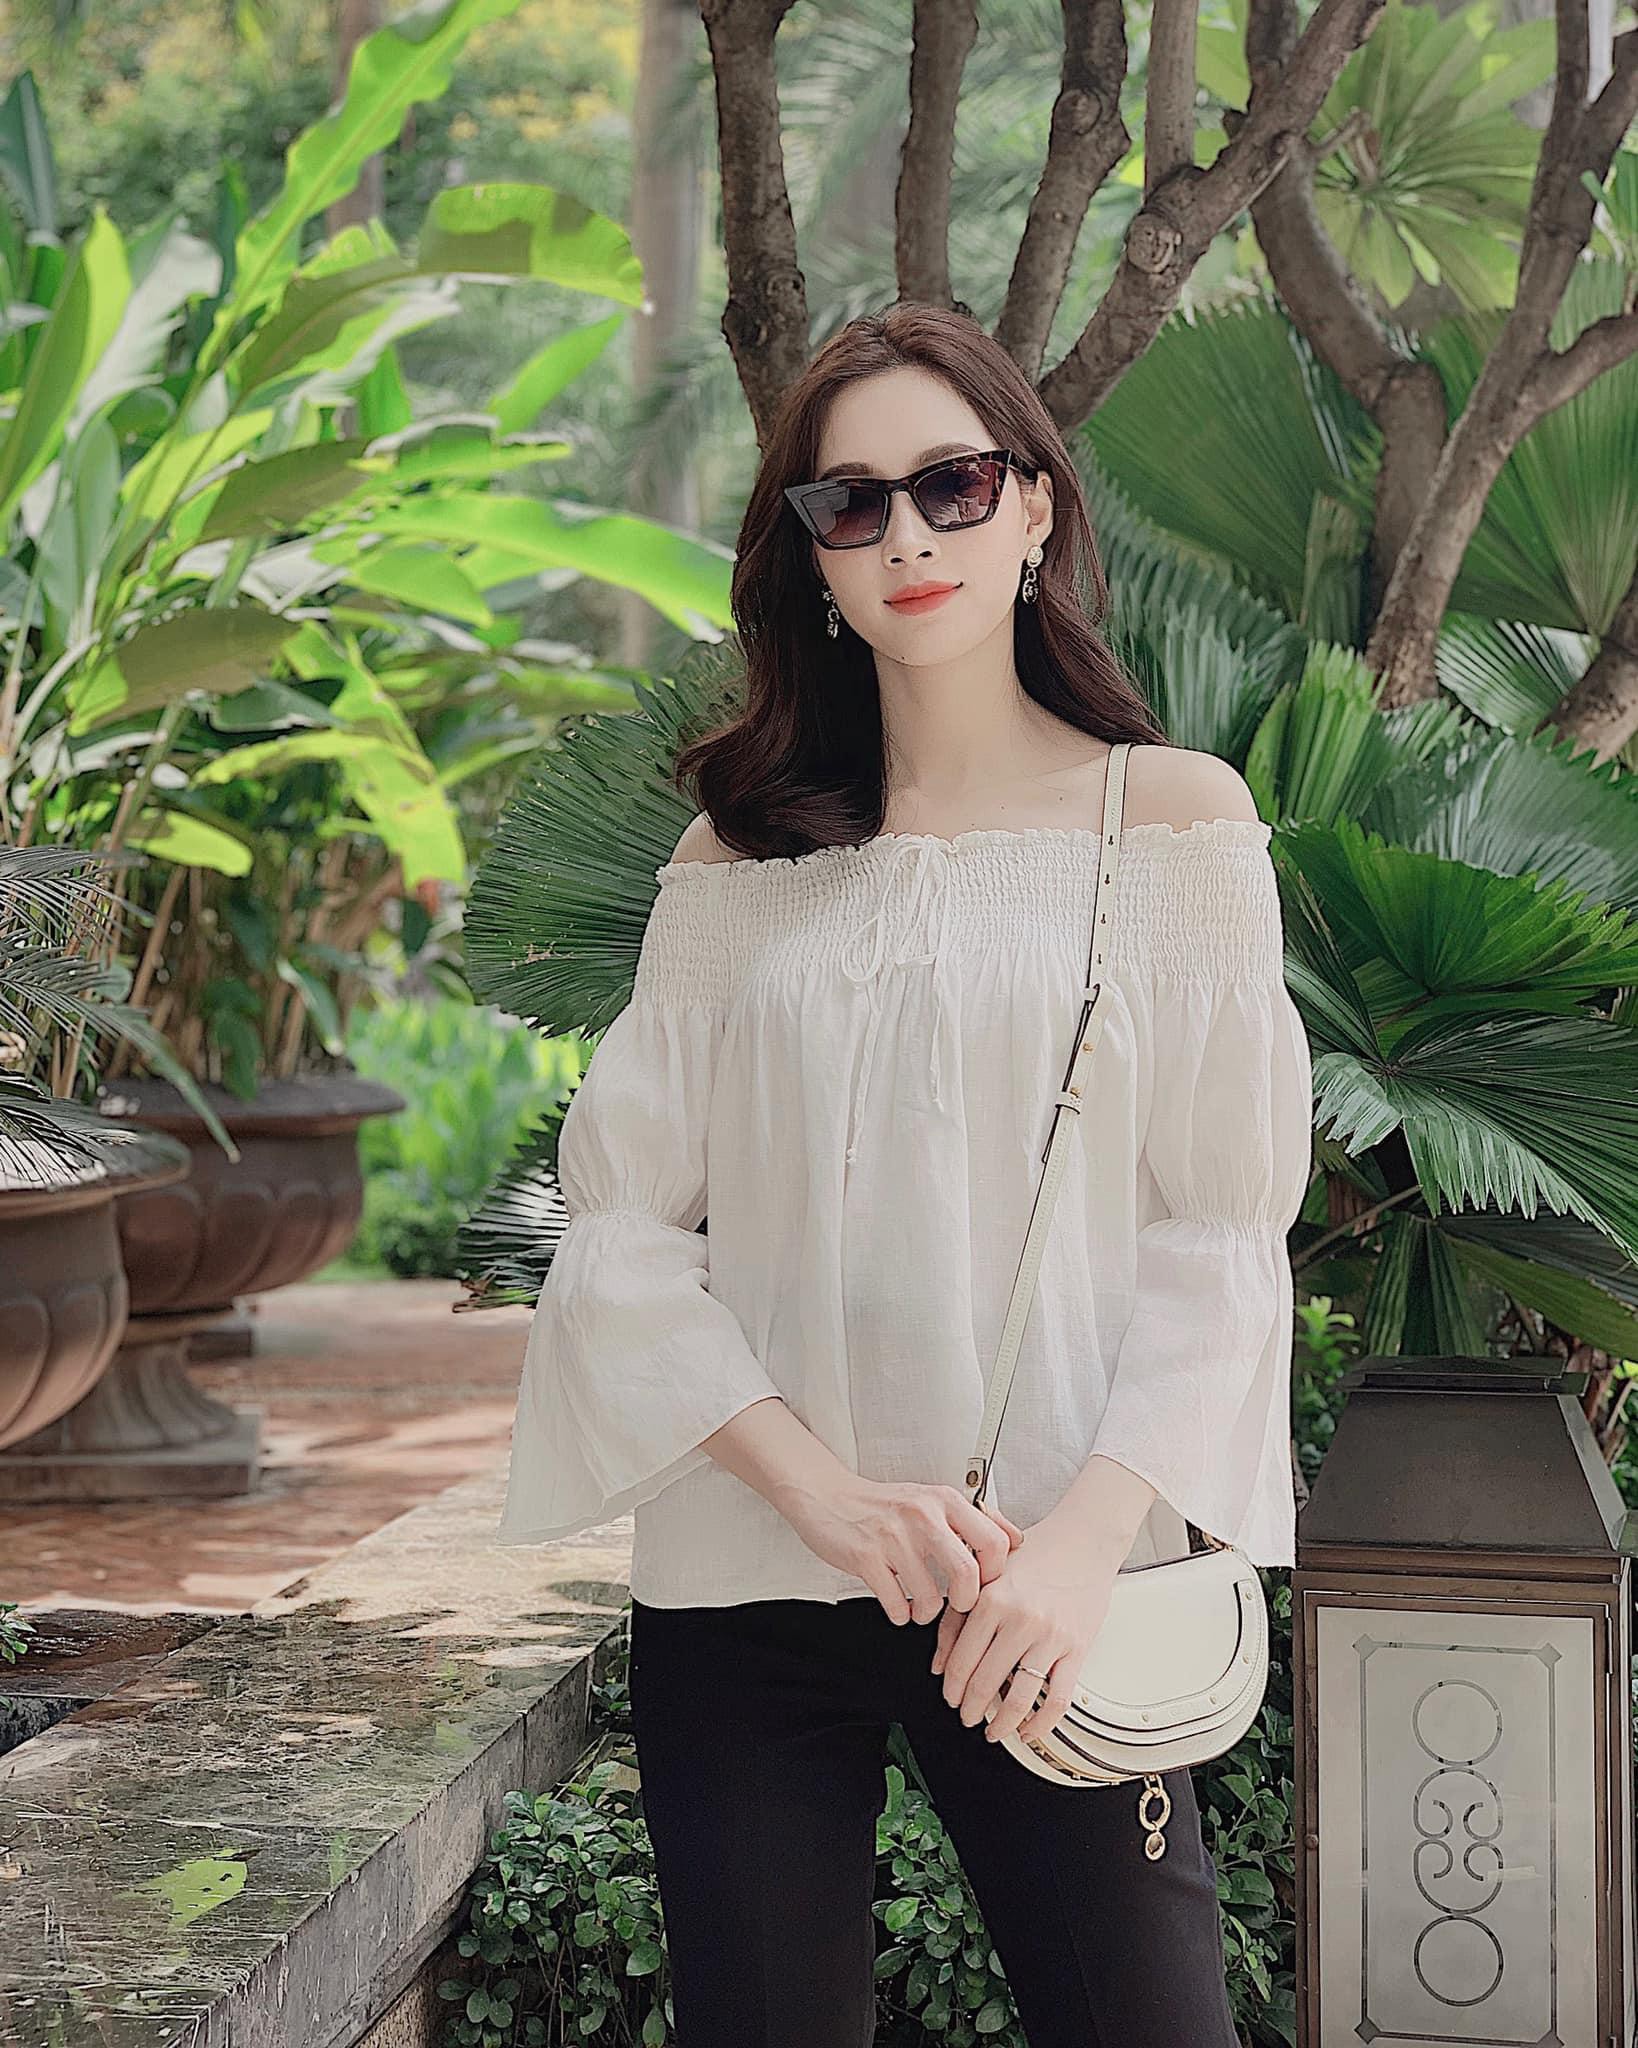 Loạt ảnh đời thường của Hoa hậu Đặng Thu Thảo khiến fan mê mệt-8